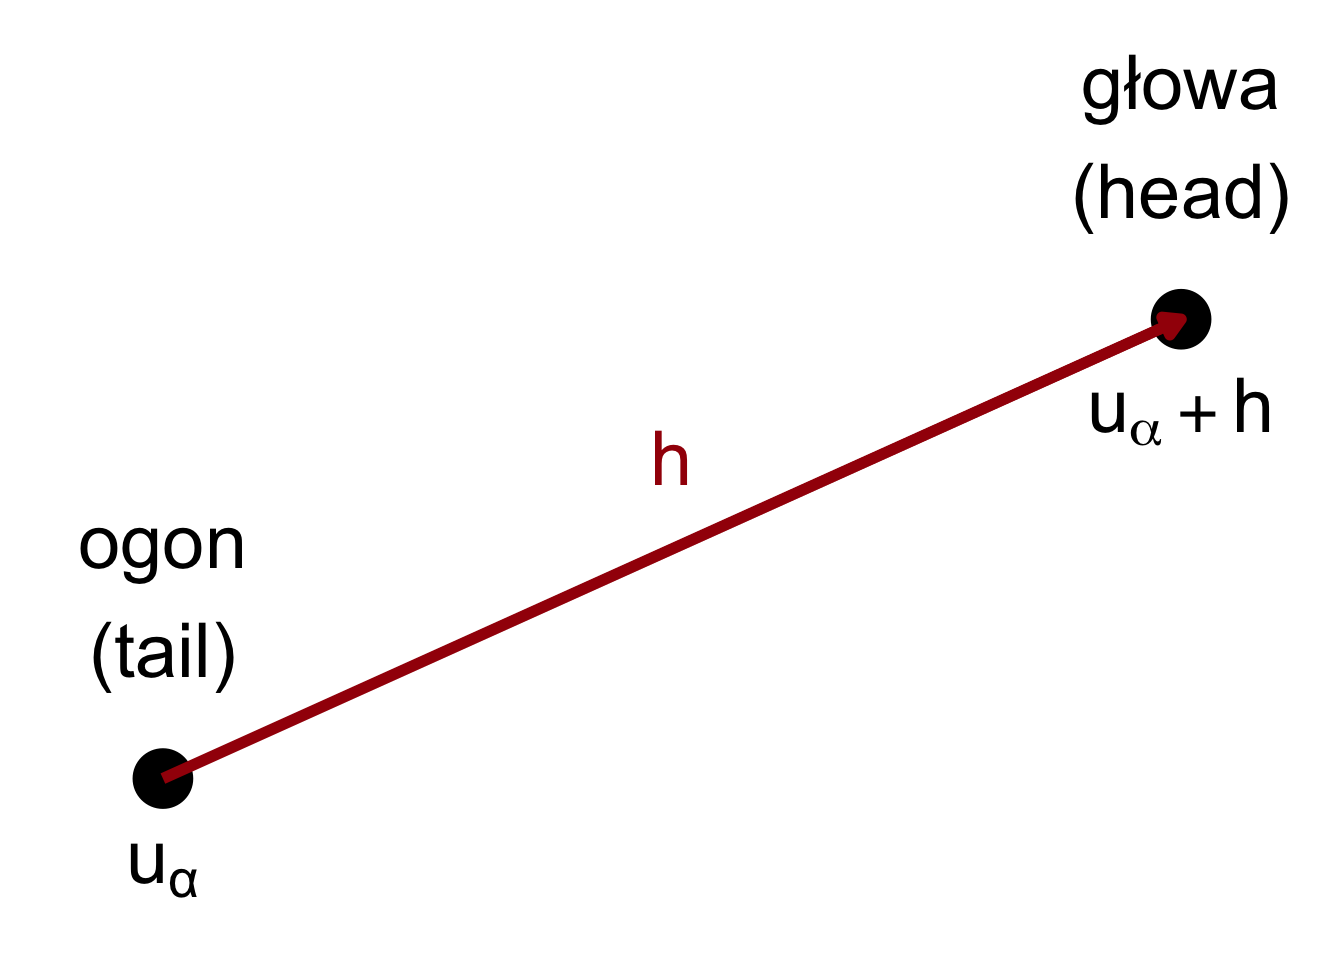 Wizualizacja relacji pomiędzy wartością ogona a głowy odległymi od siebie o wektor h.